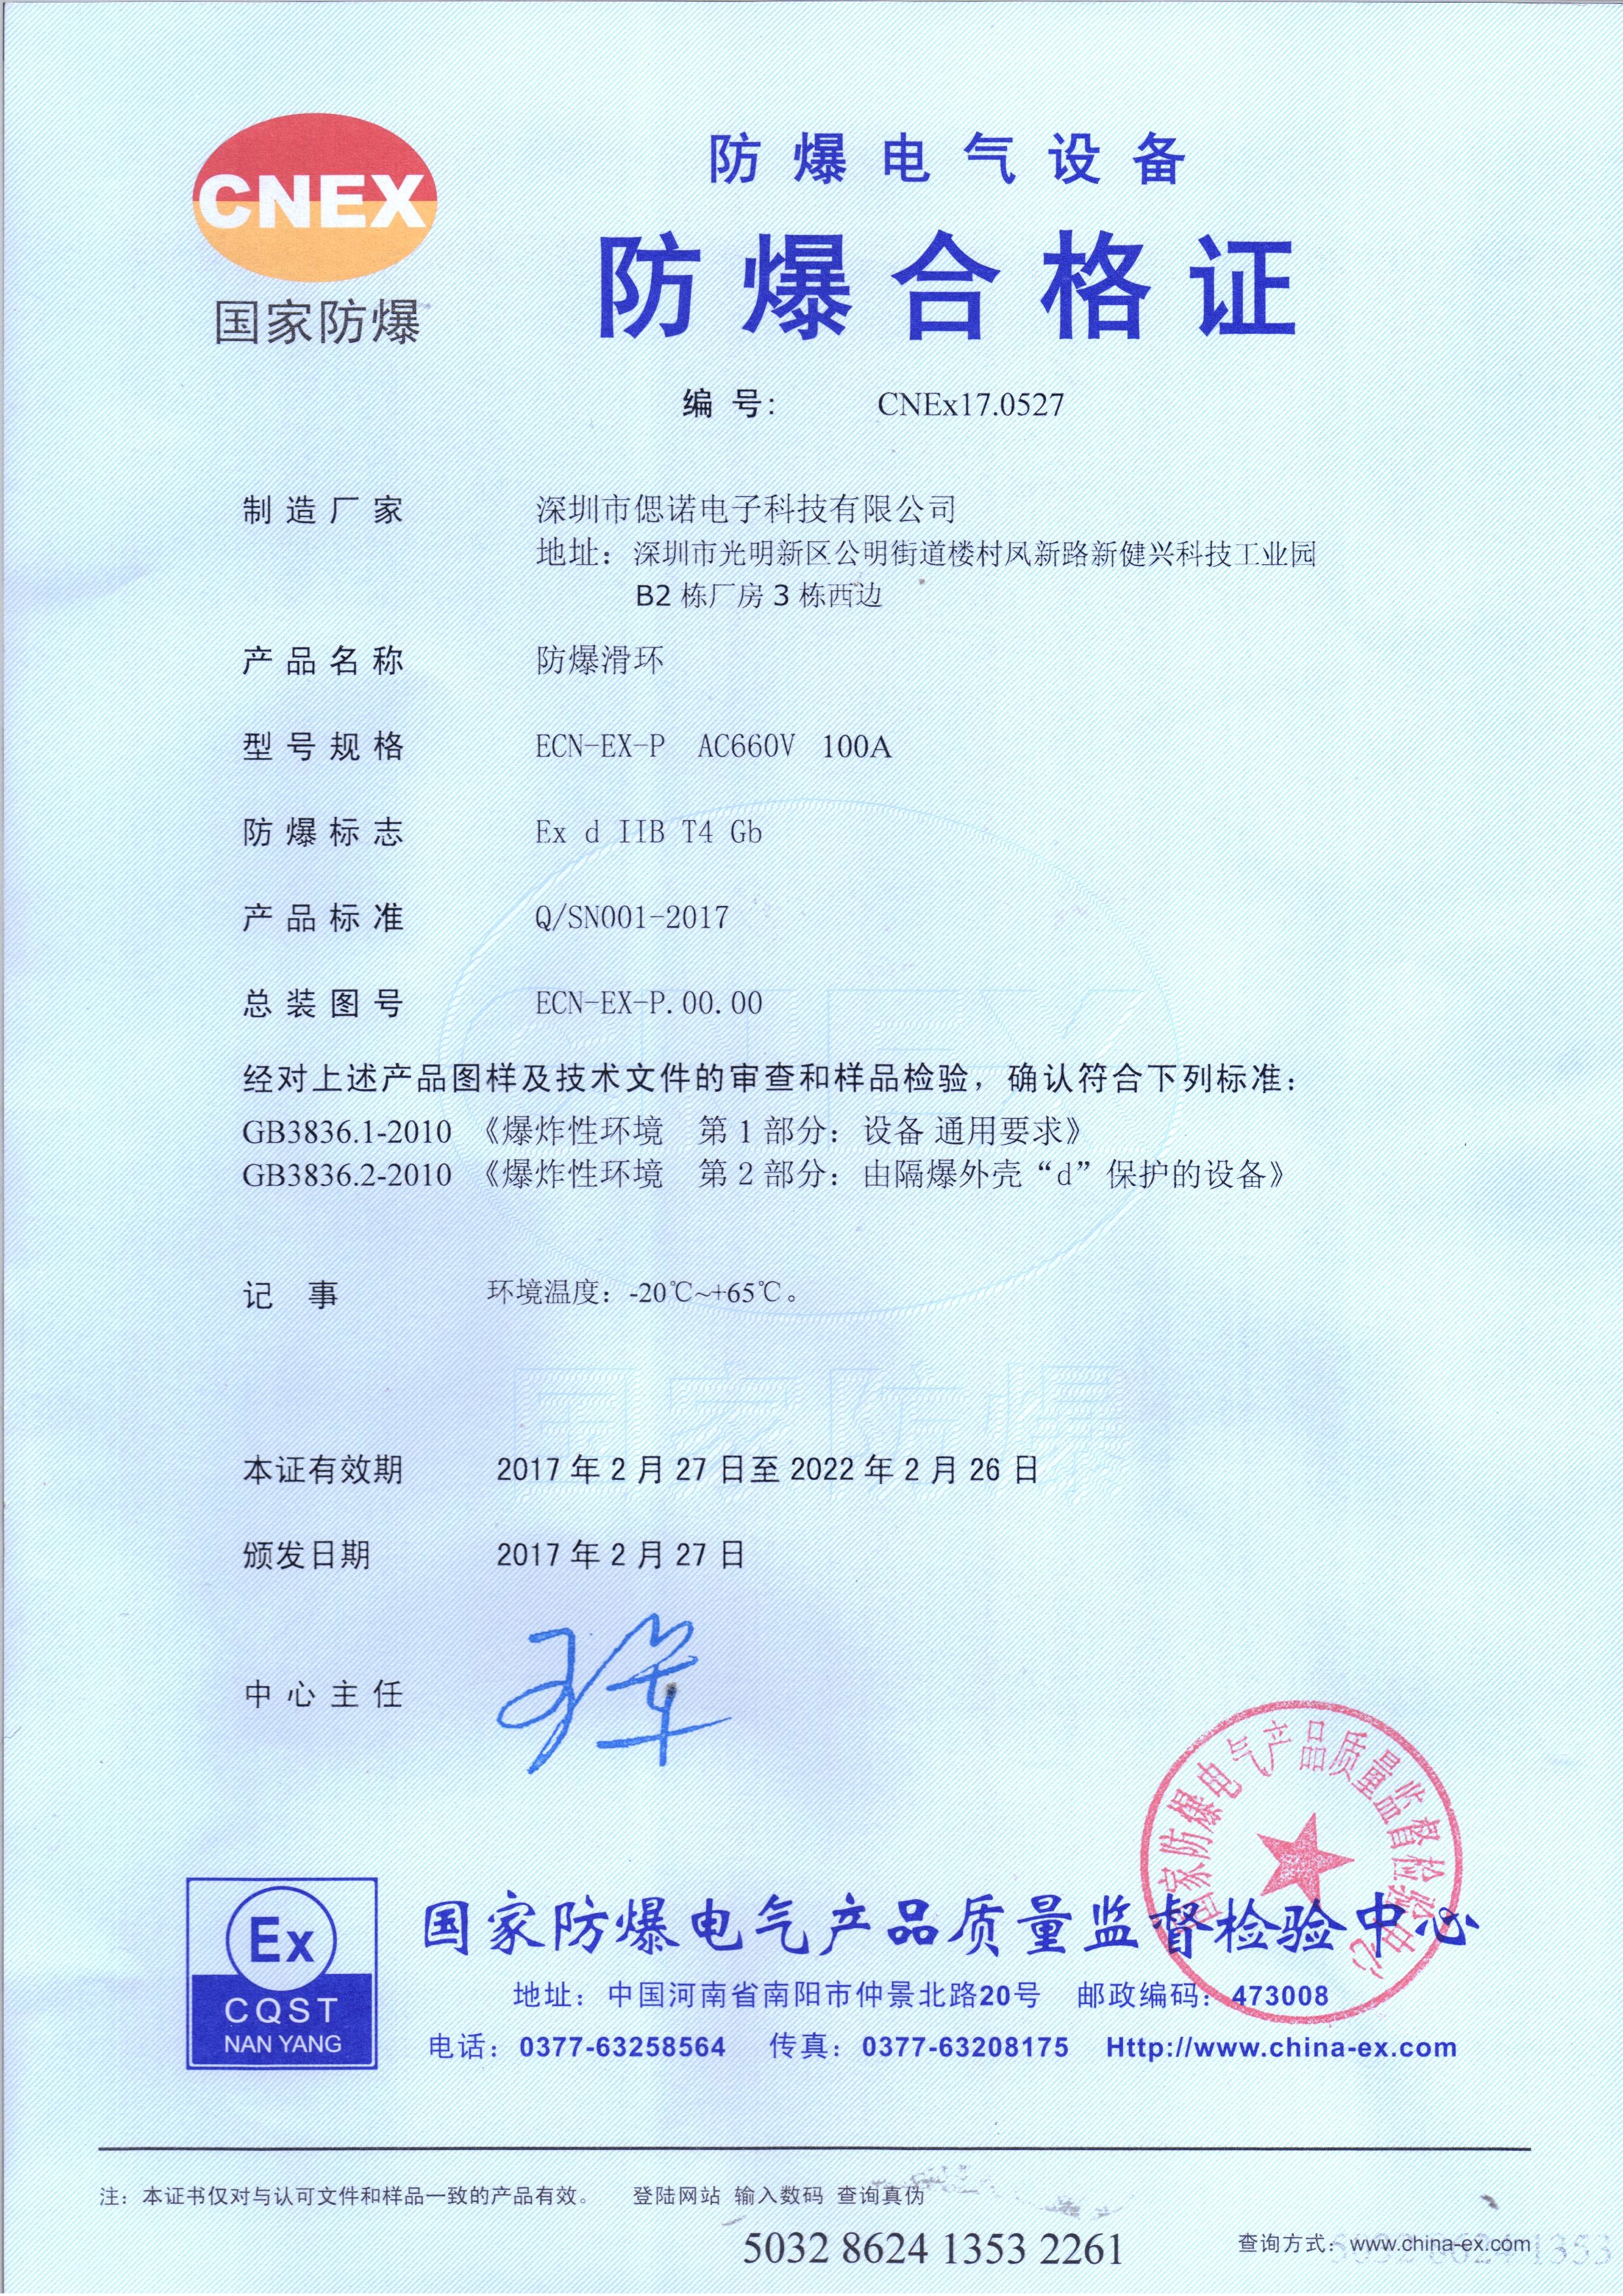 China CENO Electronics Technology Co.,Ltd Zertifizierungen